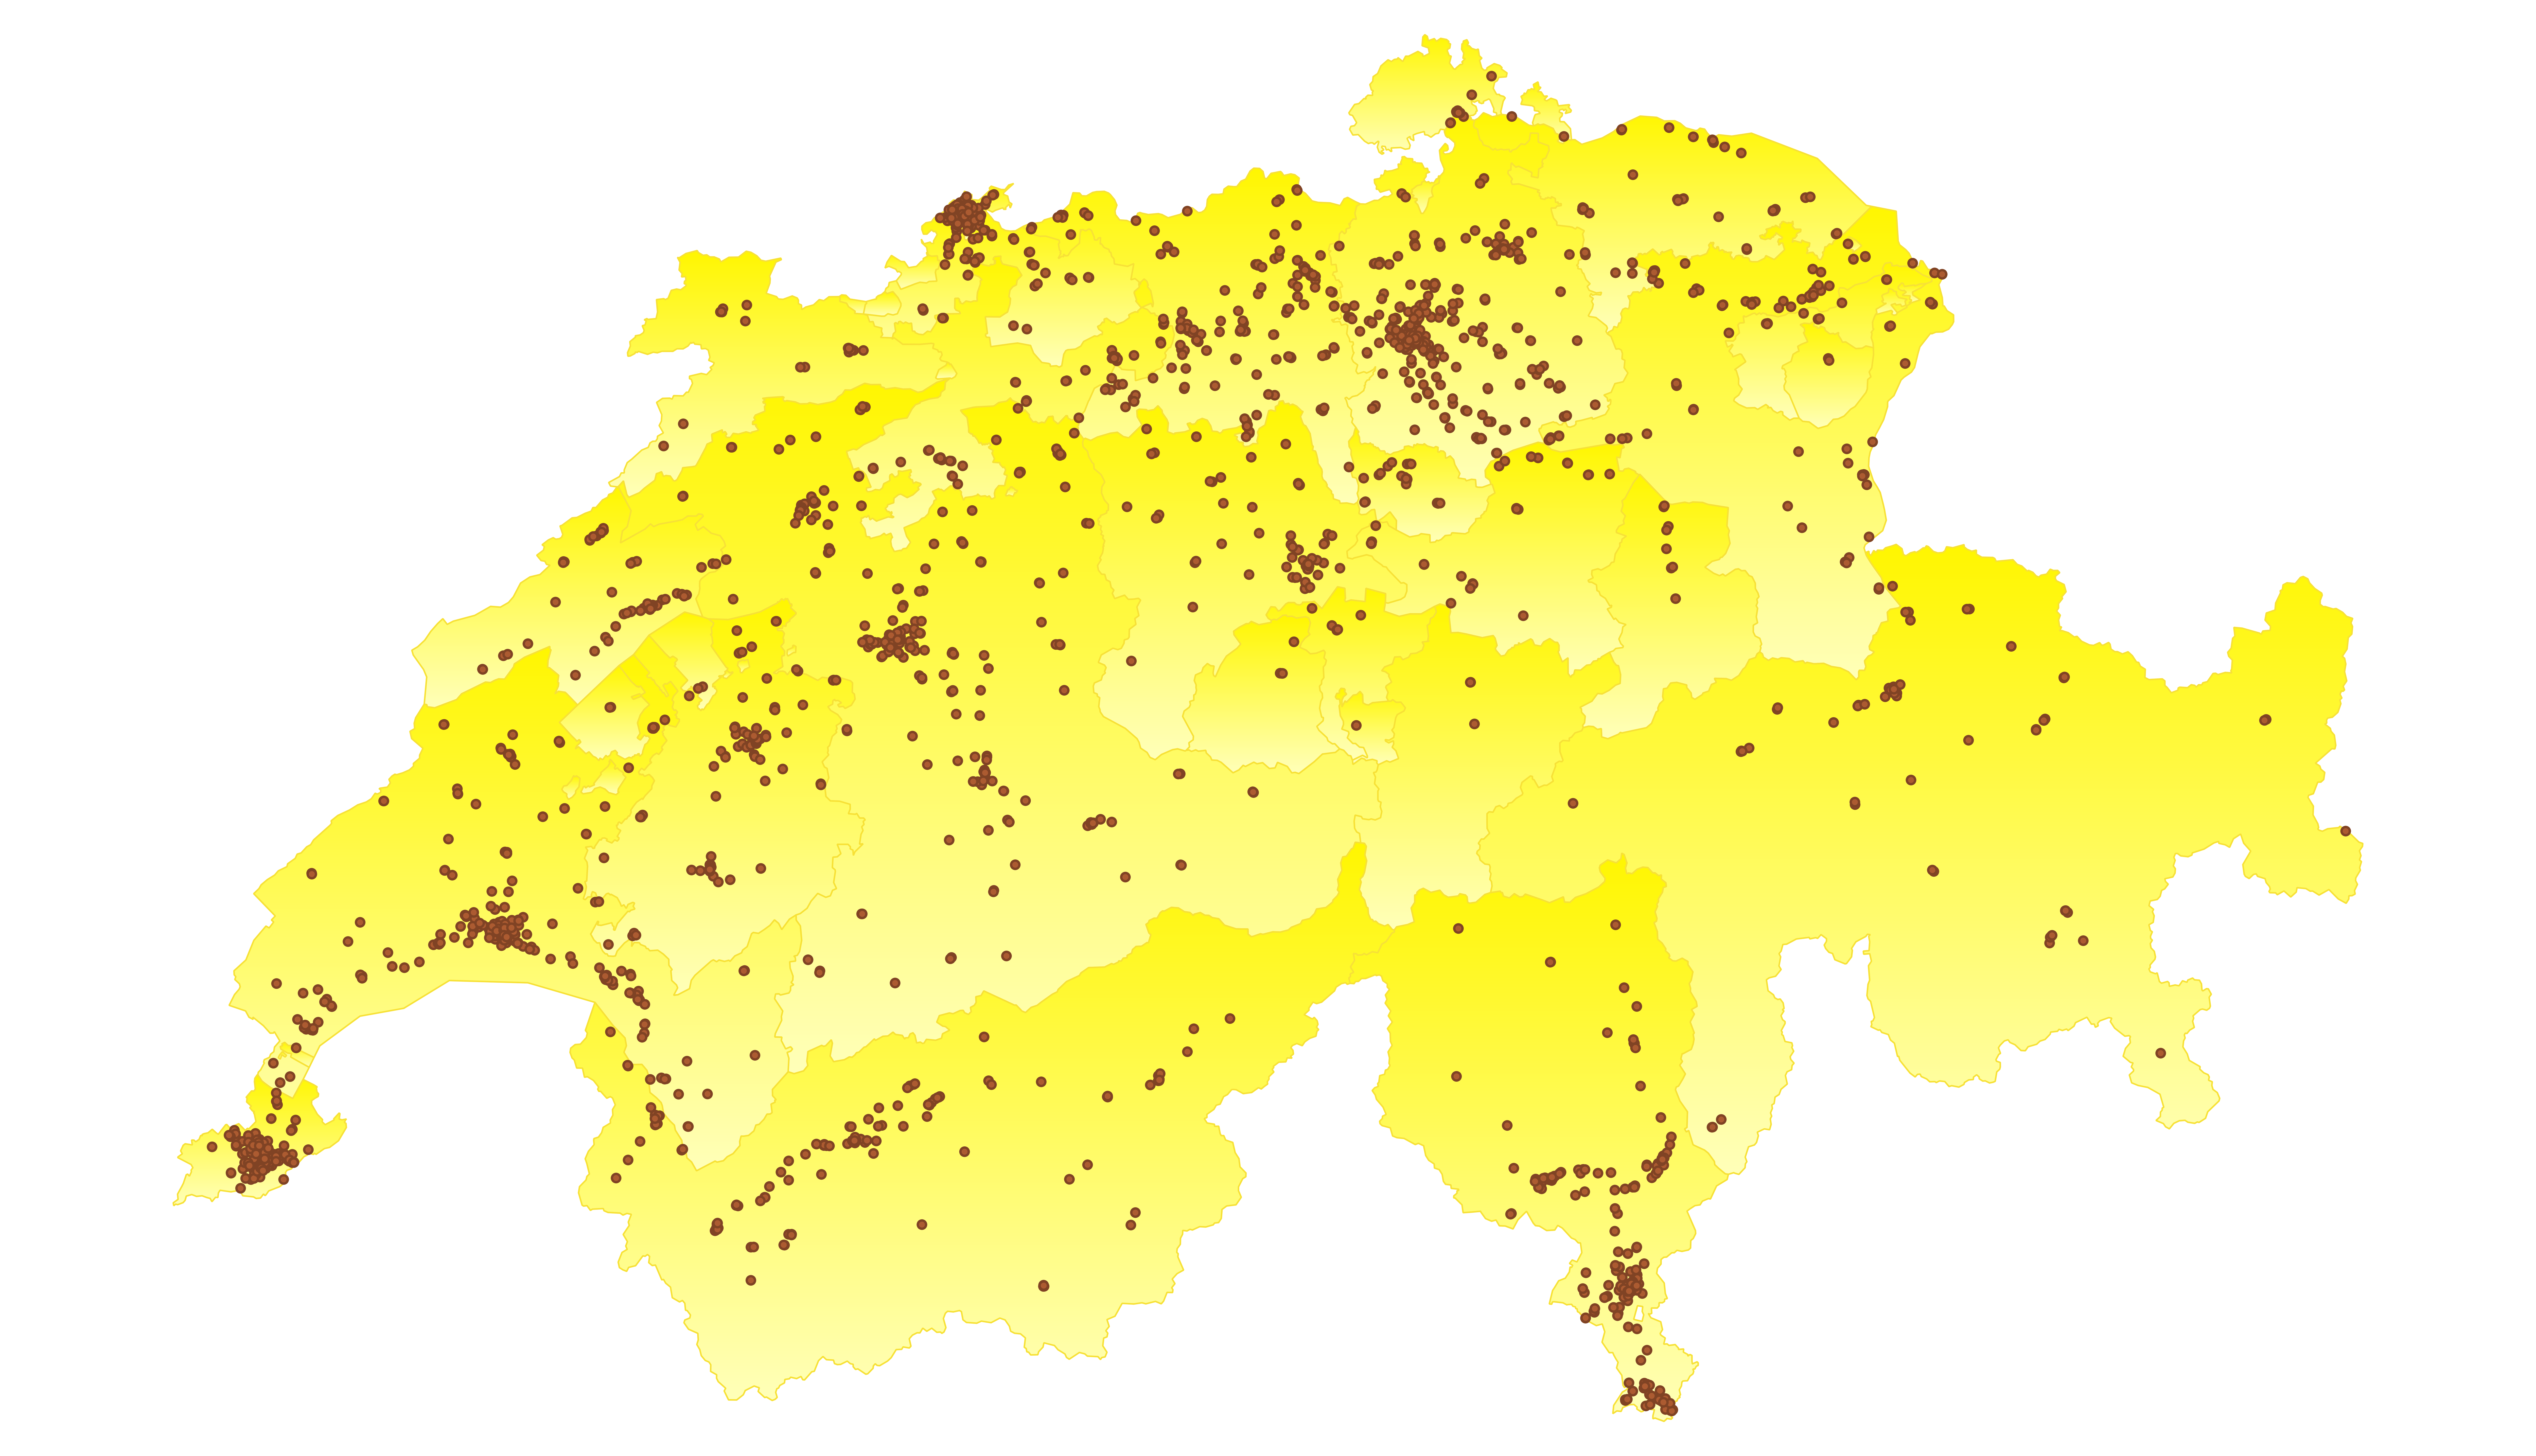 Die Karte zeigt die Apotheken- und Drogerien-Standorte der Schweiz.